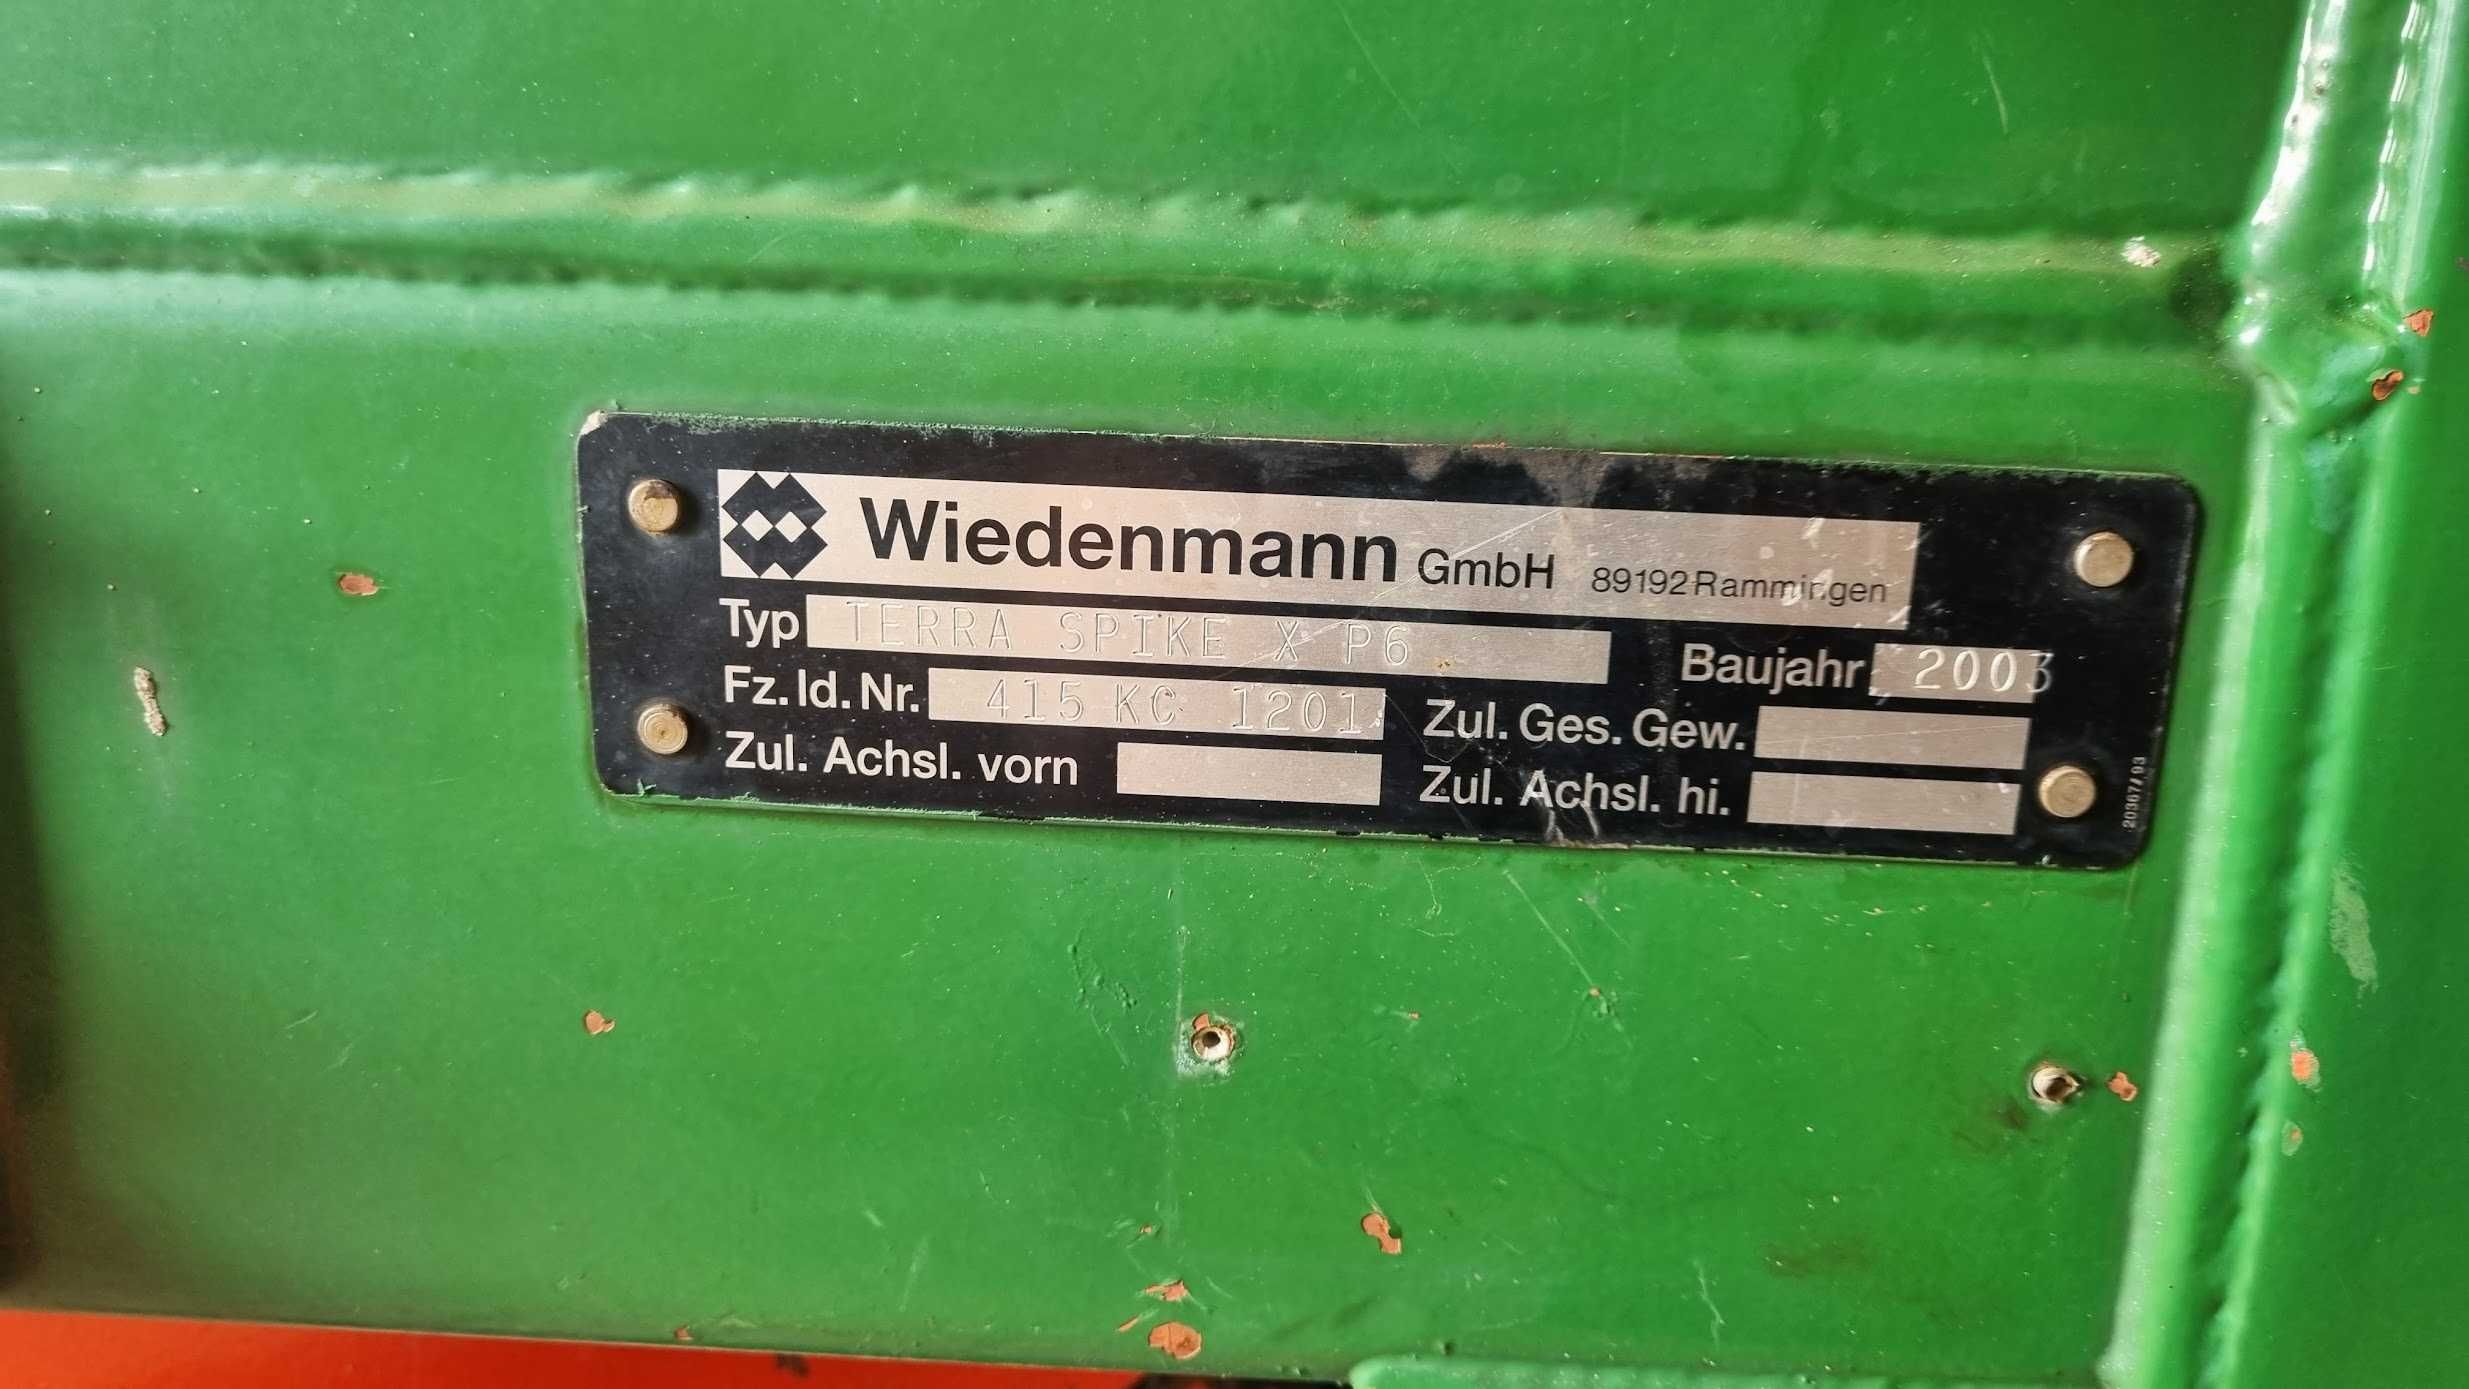 Aerator Wiedenmann XP6